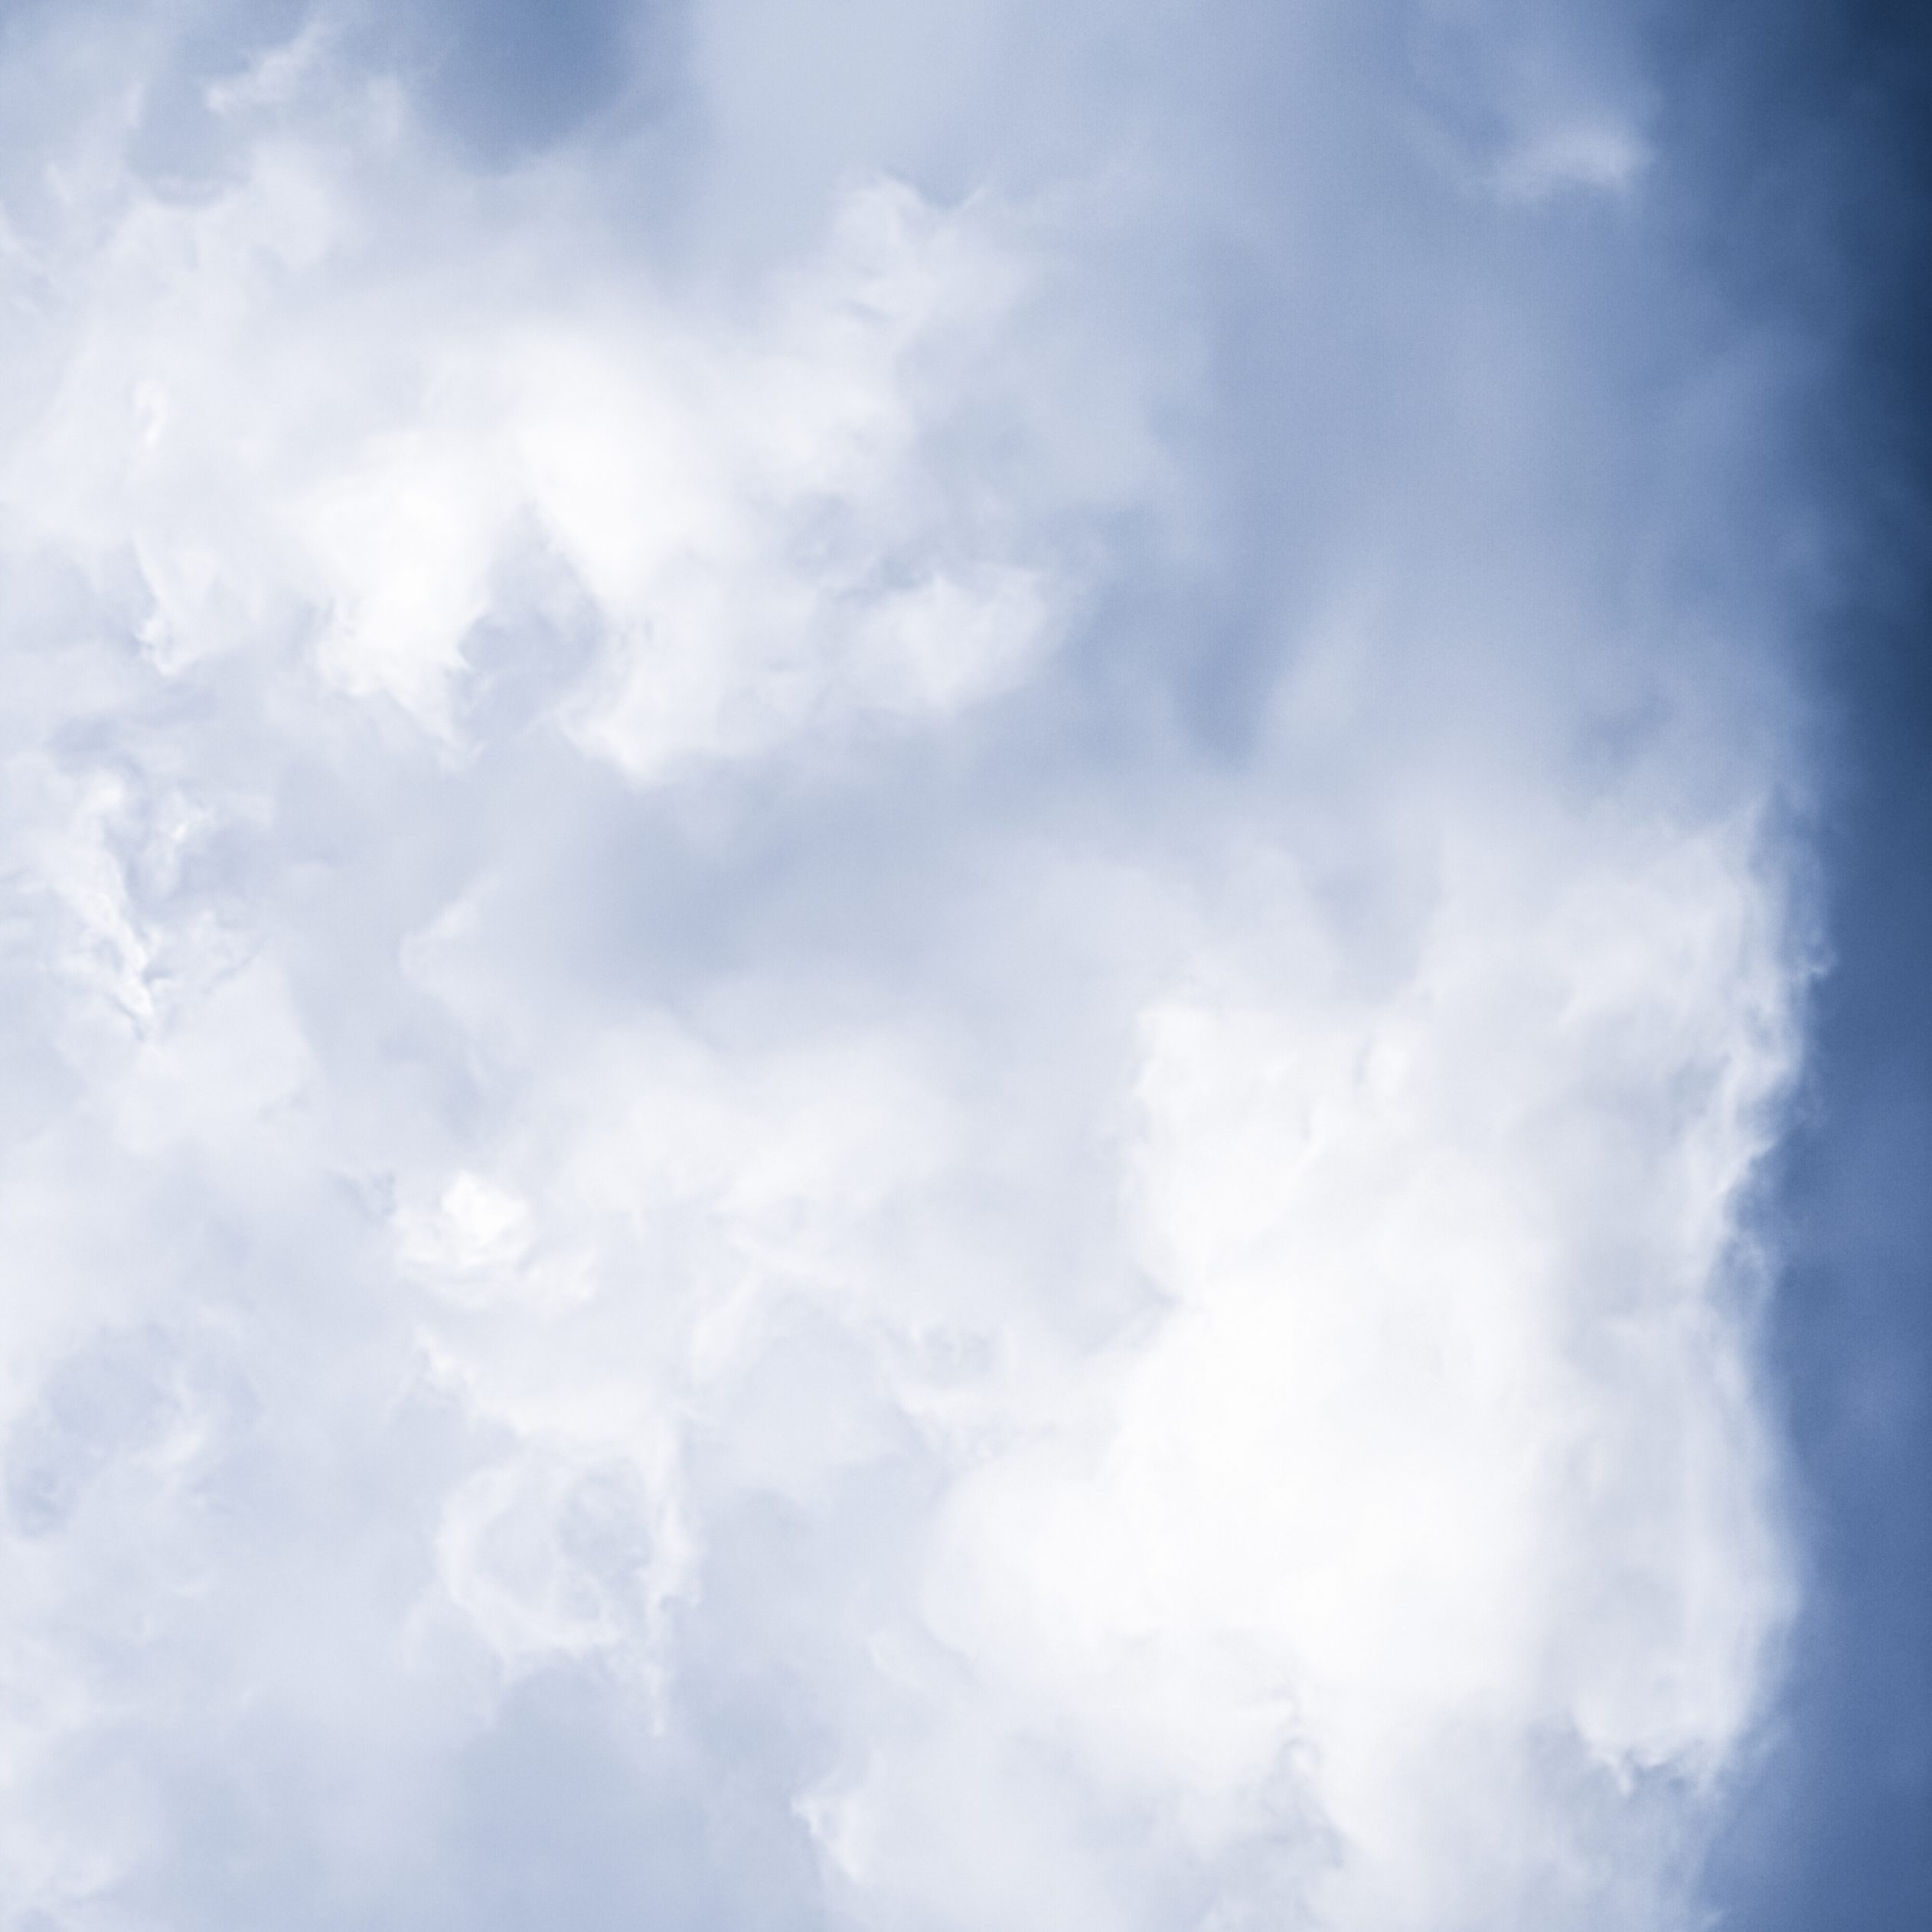 2524x2524 Parallax wallpaper 4k Minimalist Blue Sky Cloudy iPad Wallpaper 2524x2524 pixels resolution